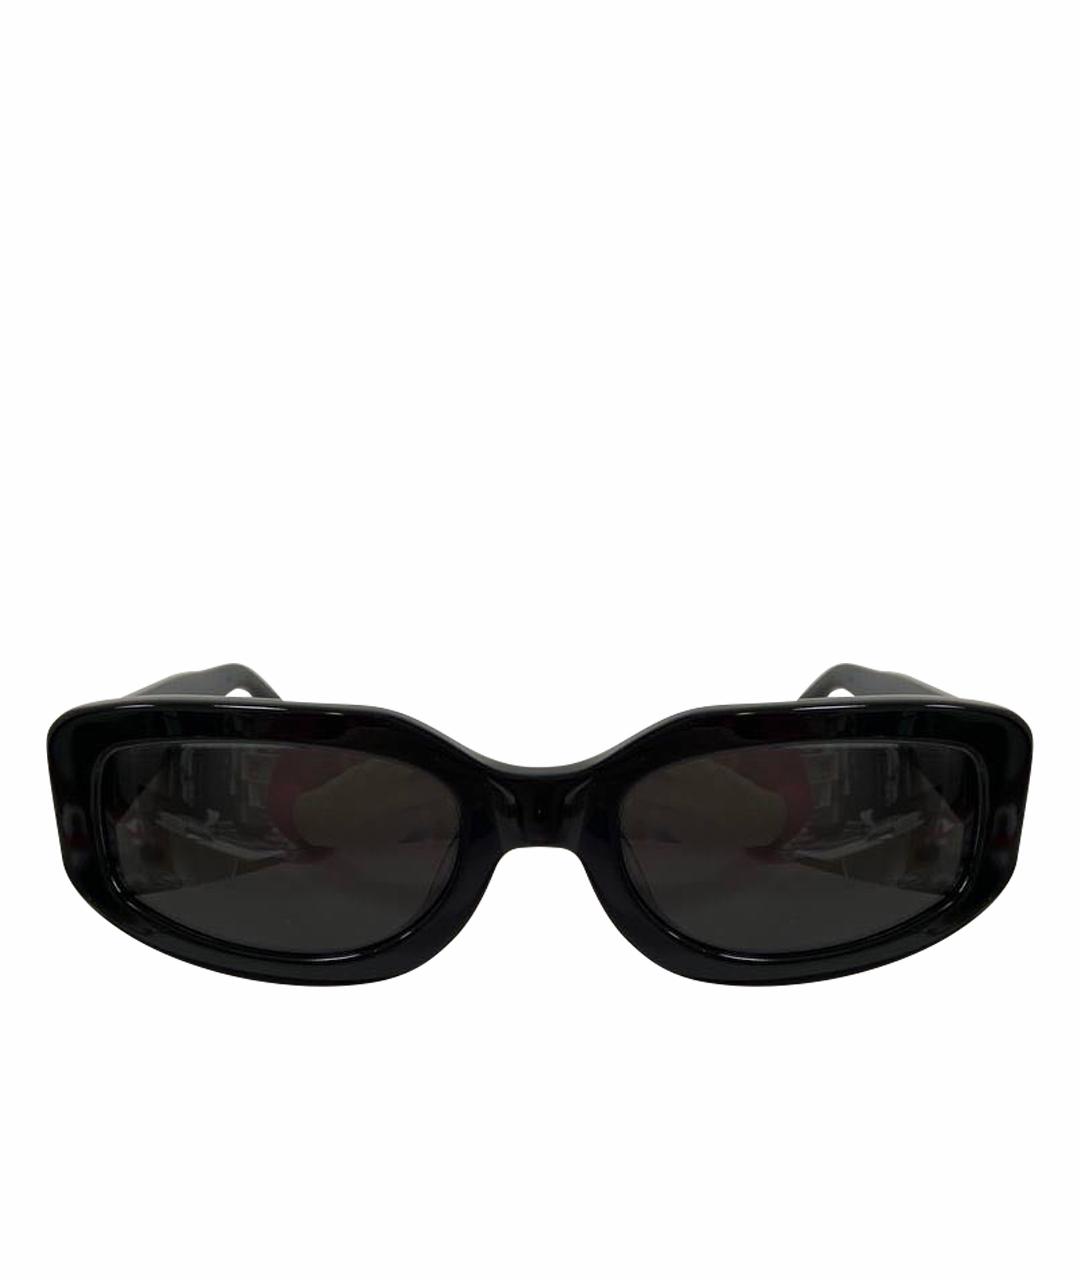 Vehla Черные пластиковые солнцезащитные очки, фото 1